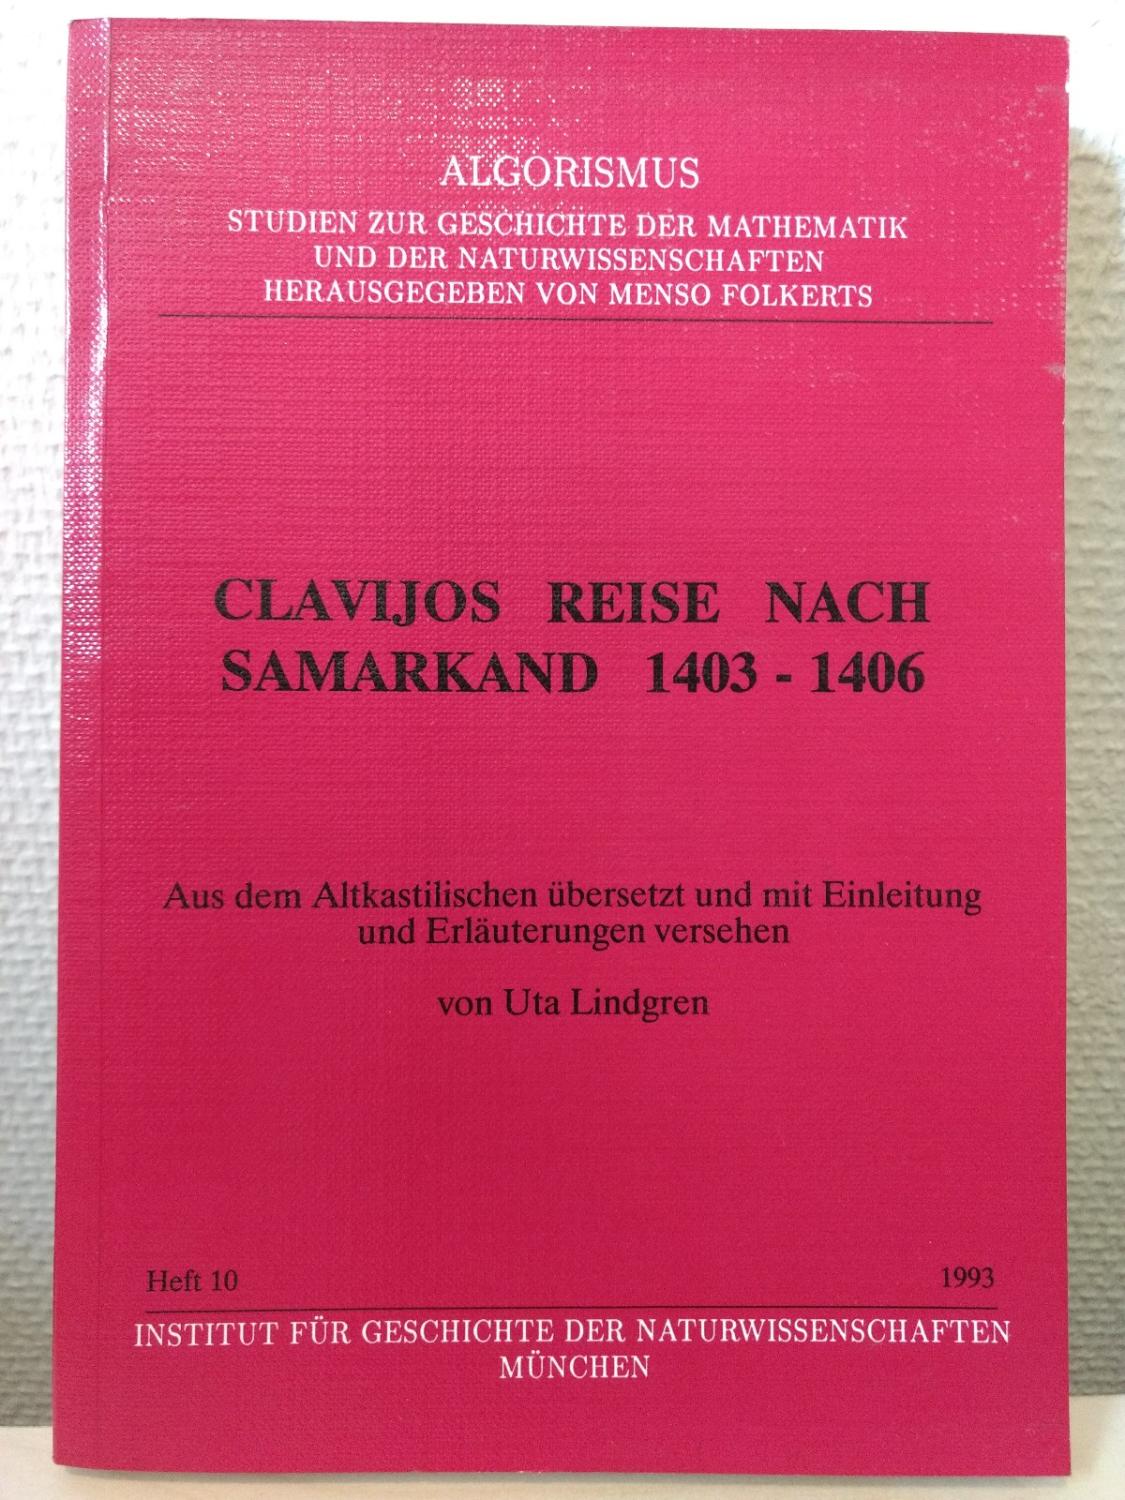 Clavijos Reise nach Samarkand 1403-1406: Aus dem Altkastilischen übersetzt und mit Einleitung und Erläuterungen versehen (Algorismus)